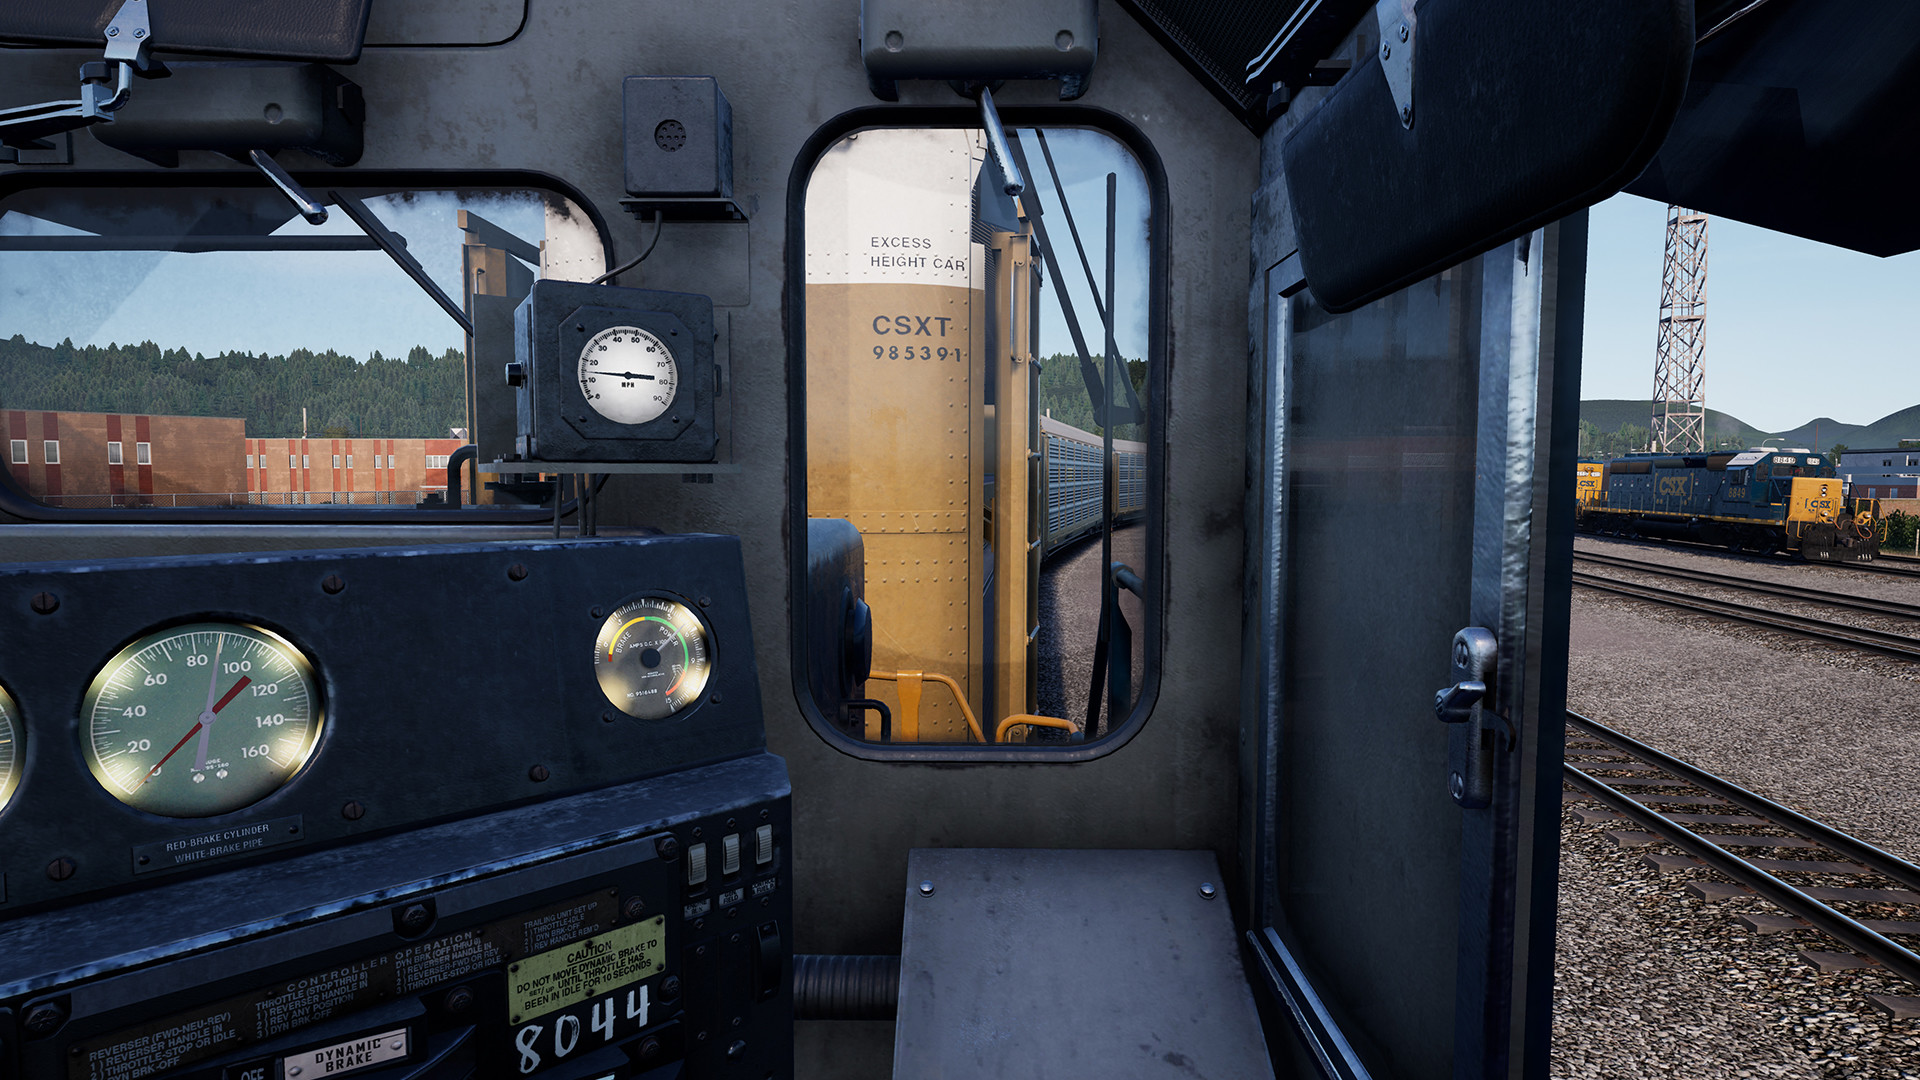 train simulator 2019 completo pc